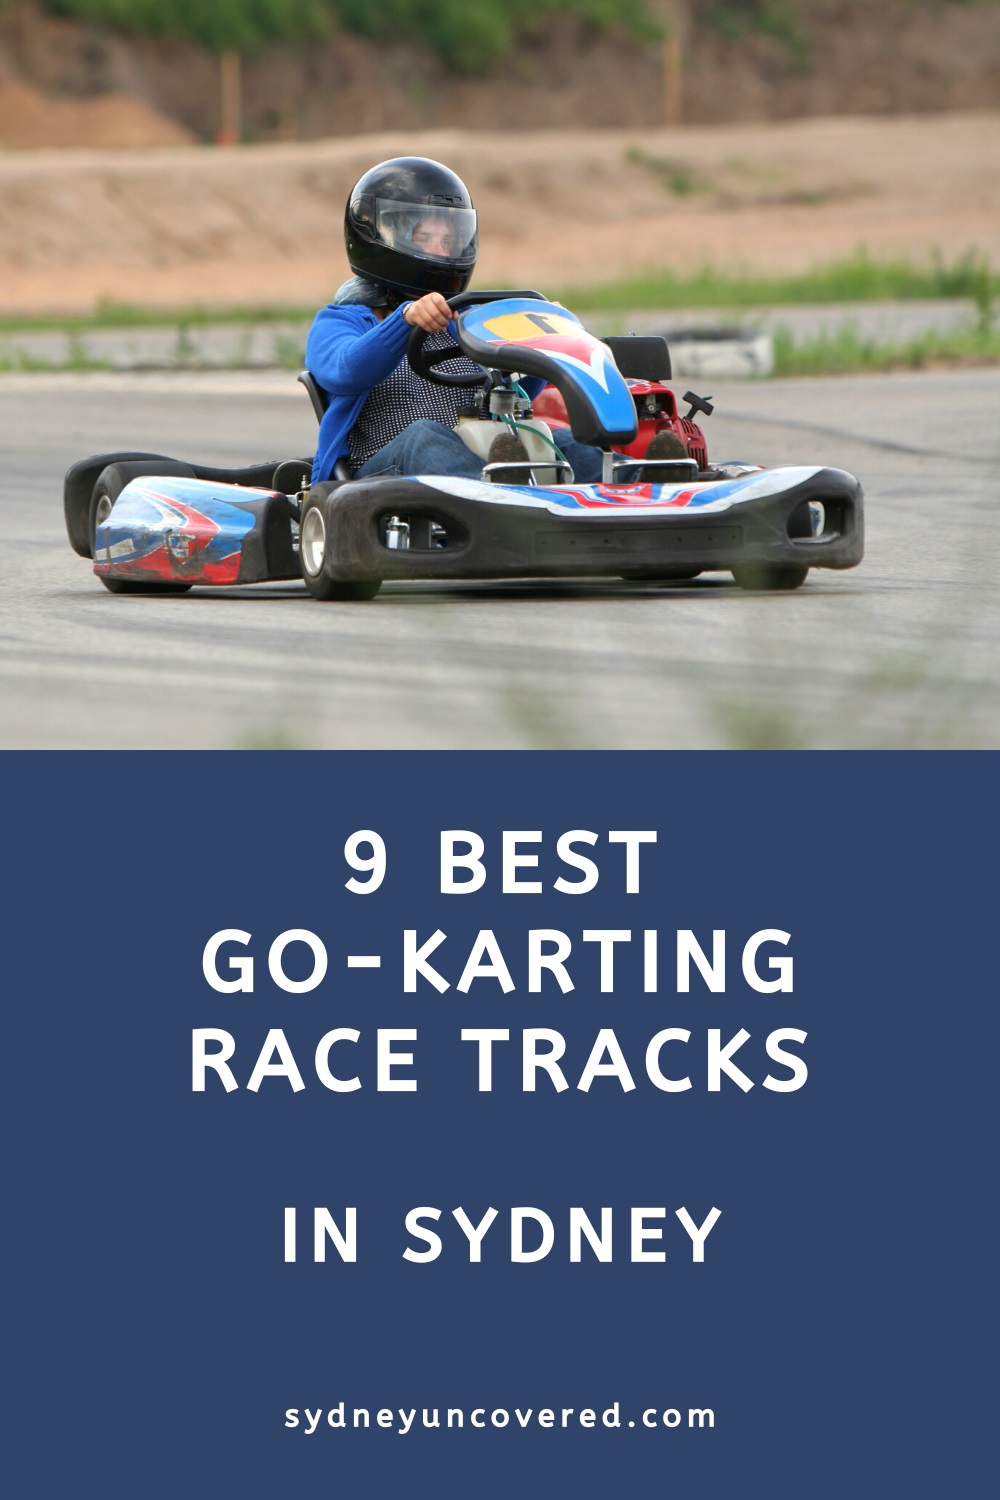 Best go-karting tracks in Sydney